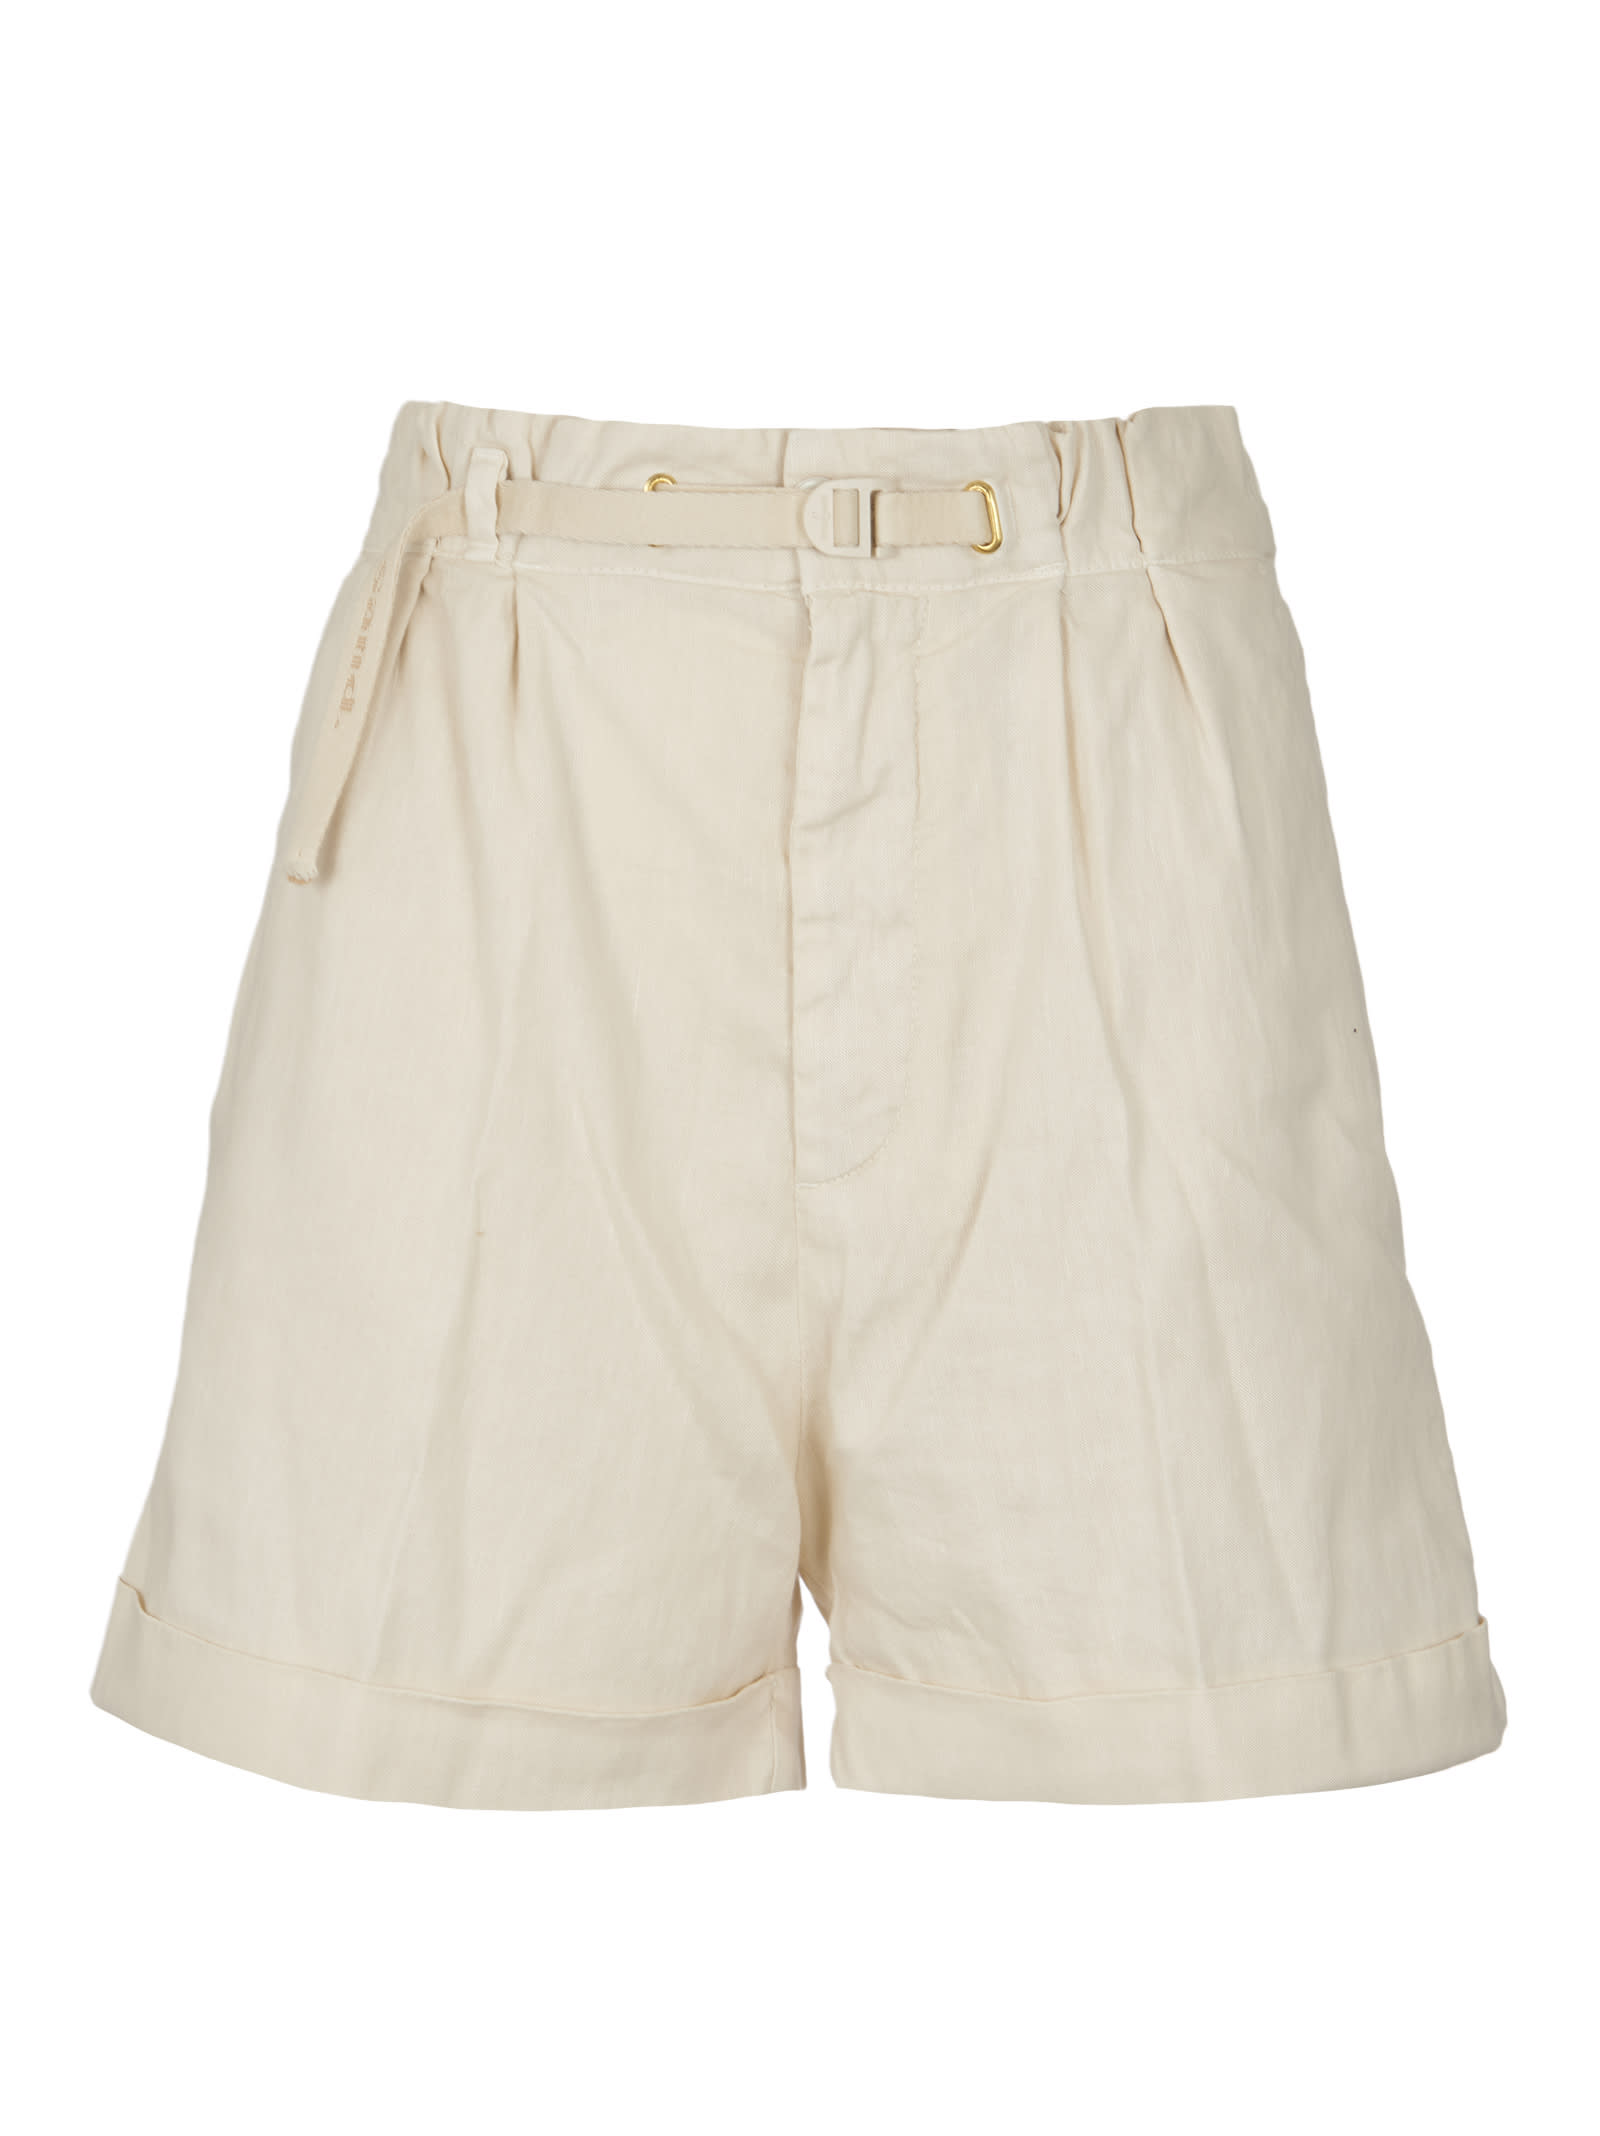 WhiteSand Belted Shorts